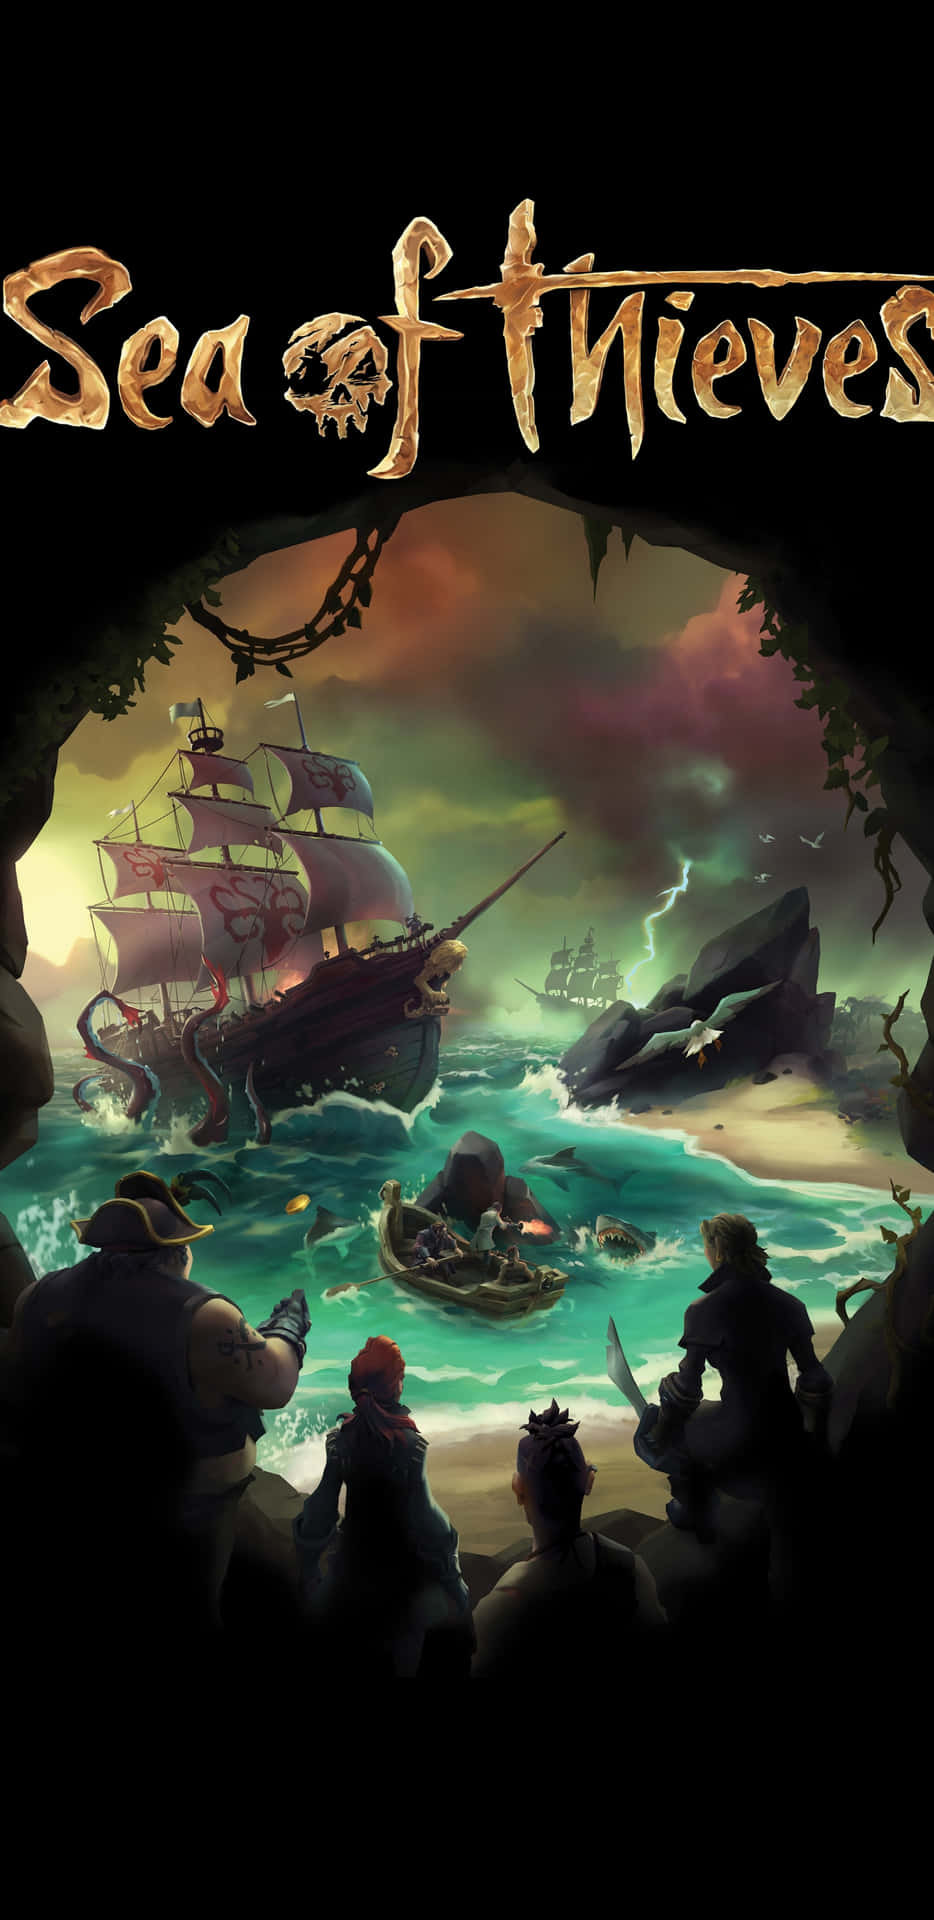 Oplev den ultimative pirat eventyr med Sea of Thieves Wallpaper. Wallpaper